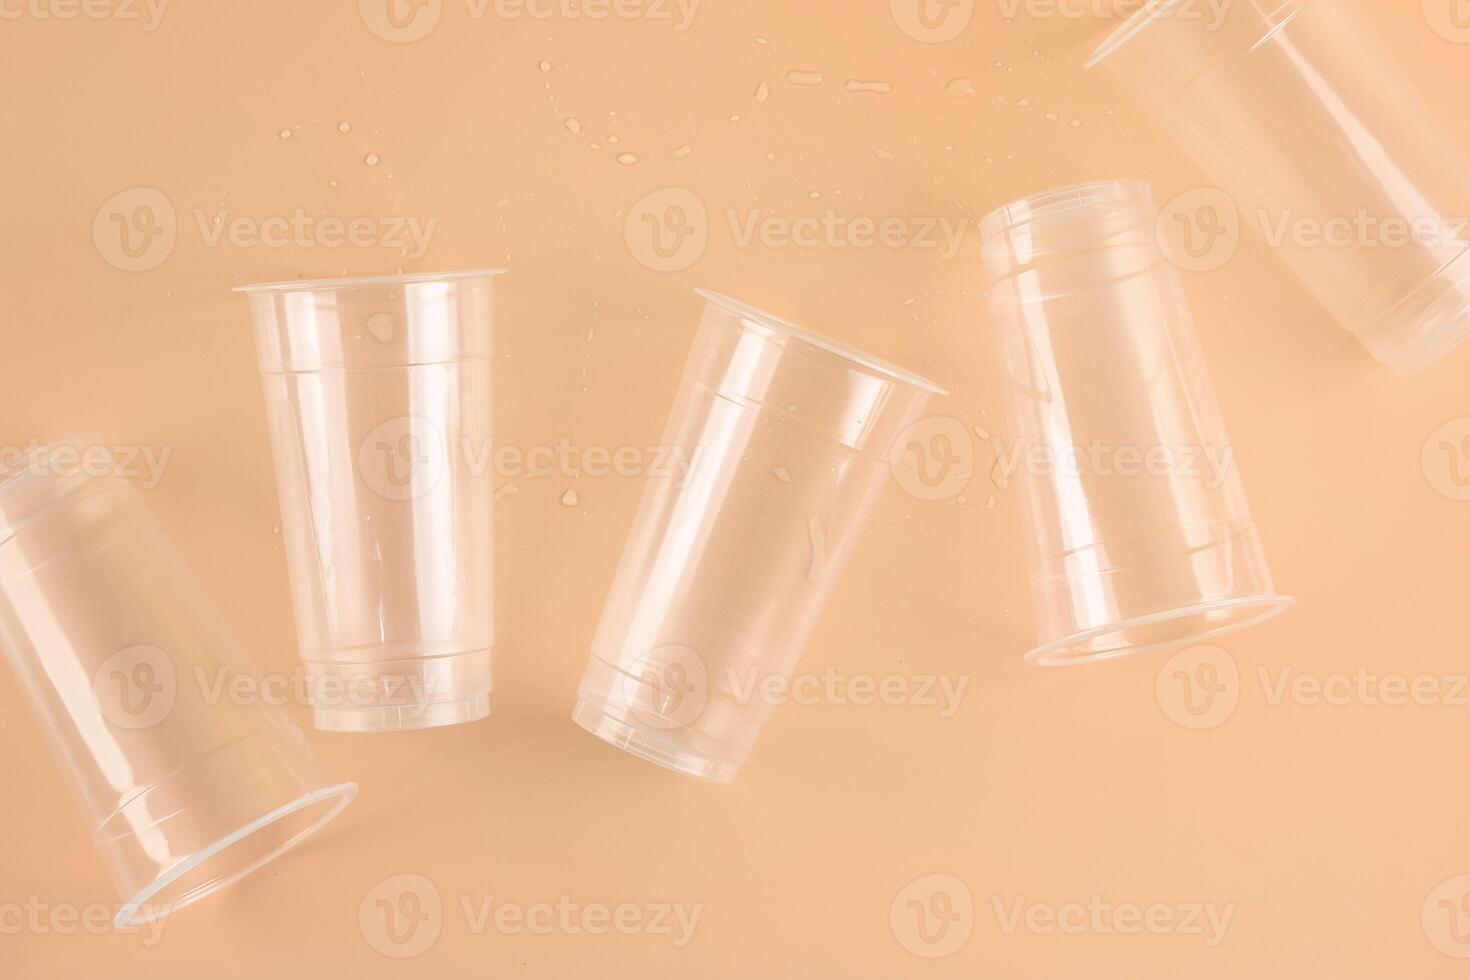 descartável plástico copos foto